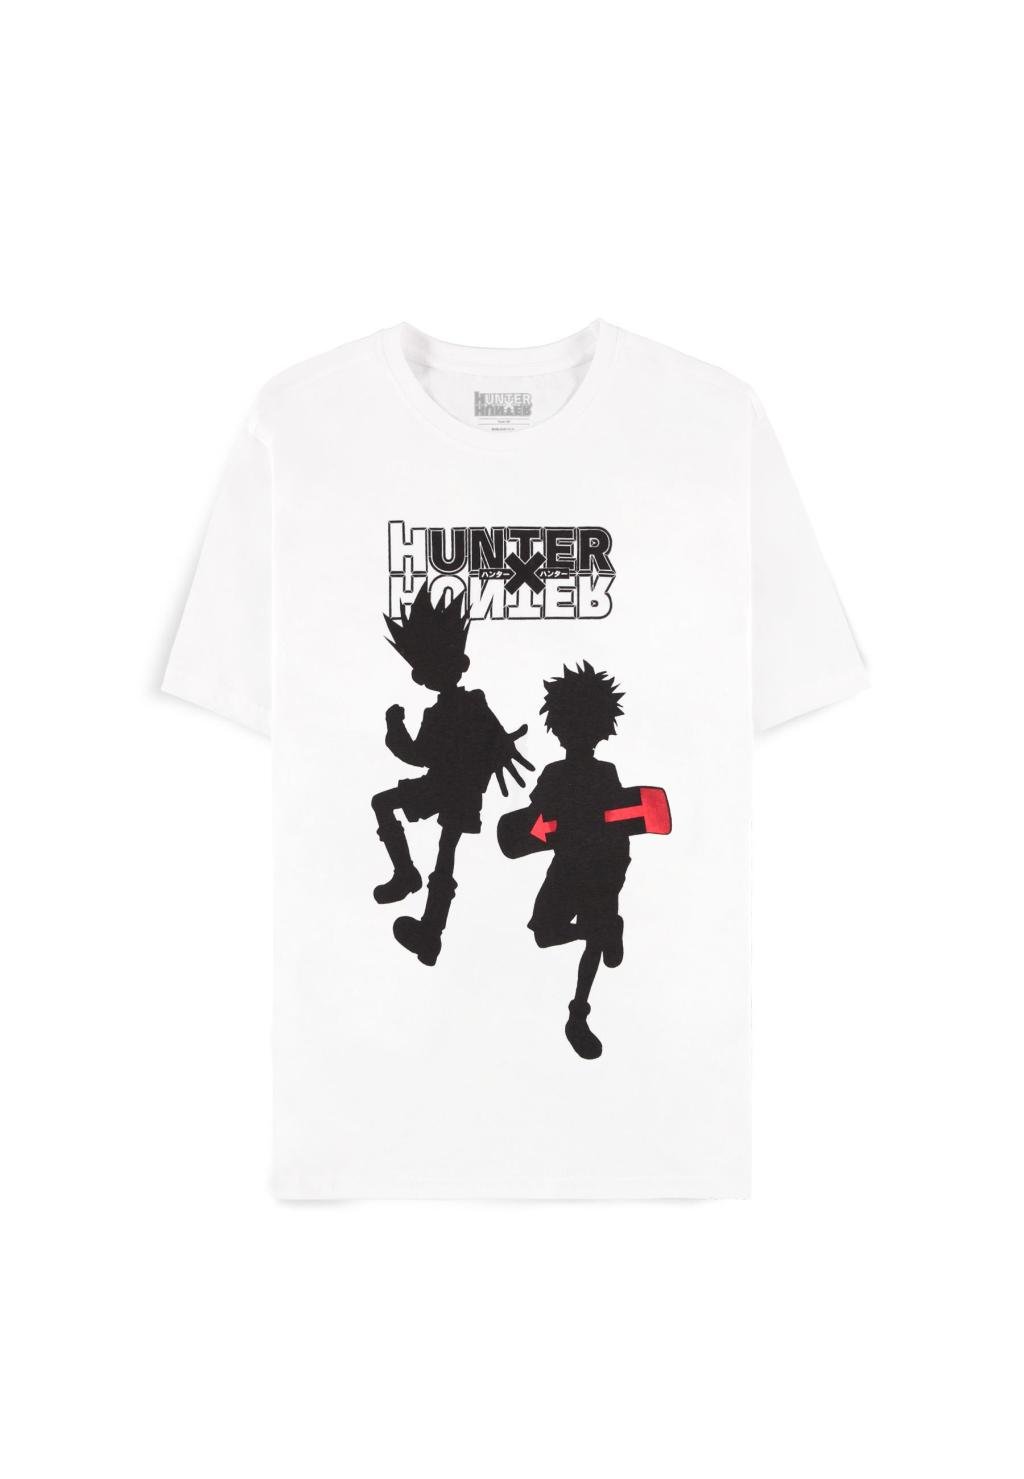 HUNTER X HUNTER - Gon & Kirua Skate Board - Men's T-shirt (L)